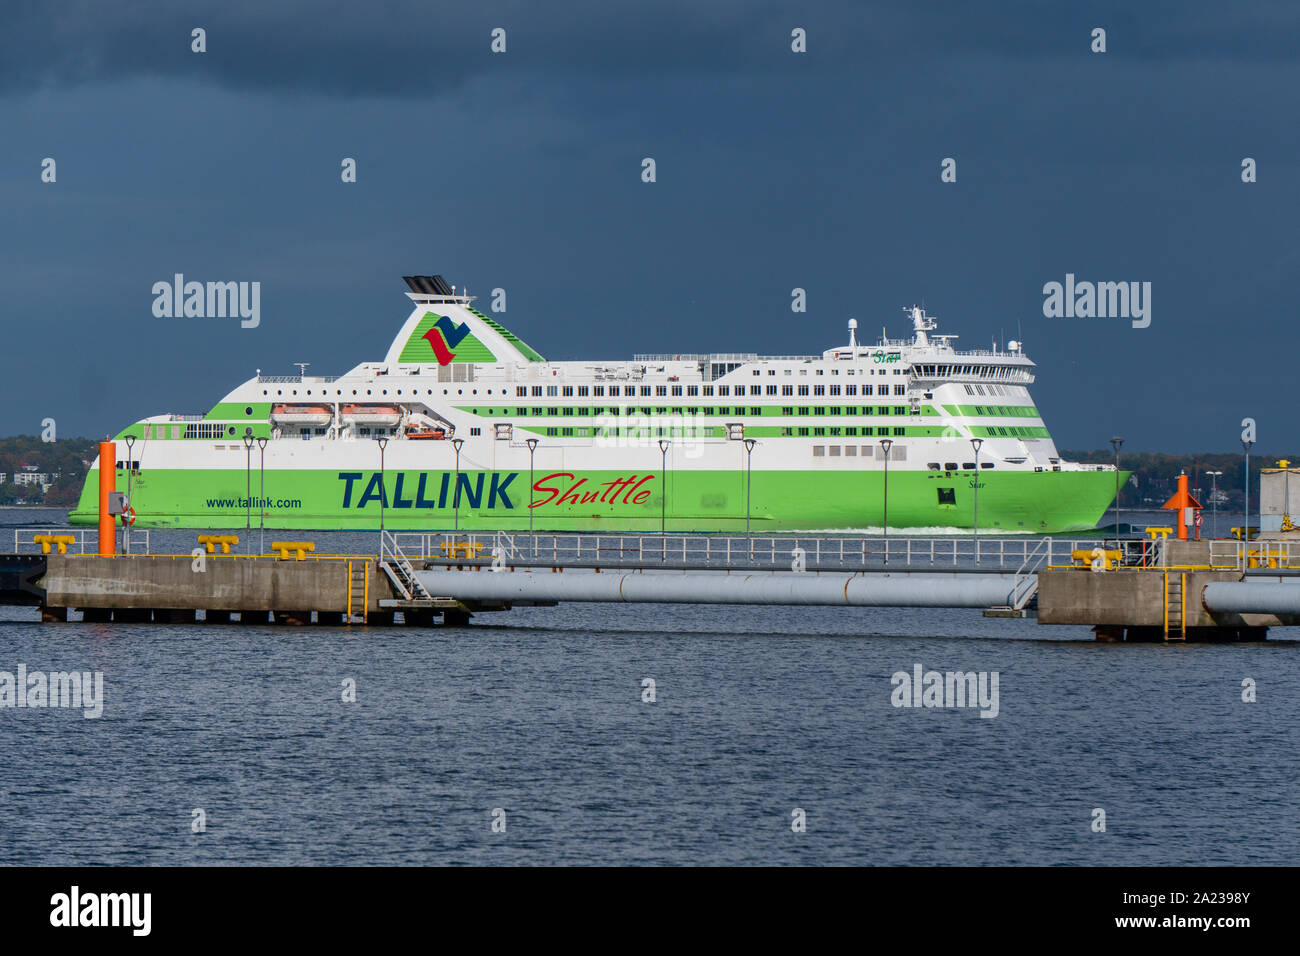 Meer Fähre Tallink Shuttle Star aus der Tallink Flotte geht an den Tallinner Hafen Vanasadam nach Estland aus Finnland mit Reisenden und Passagiere Stockfoto